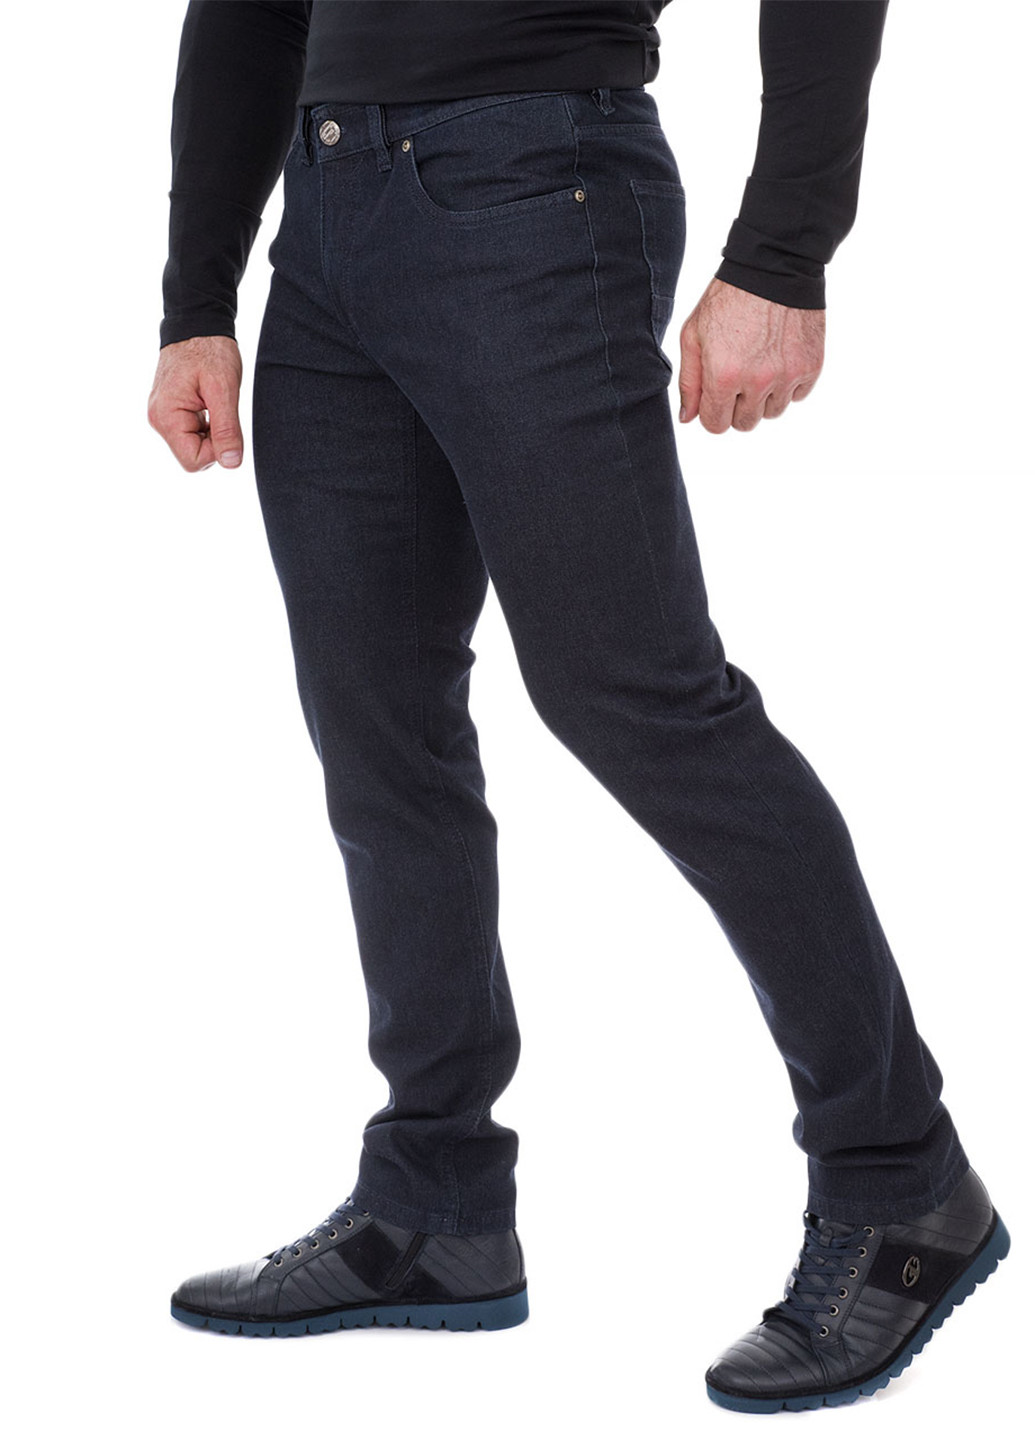 Черные демисезонные прямые джинсы Gardeur